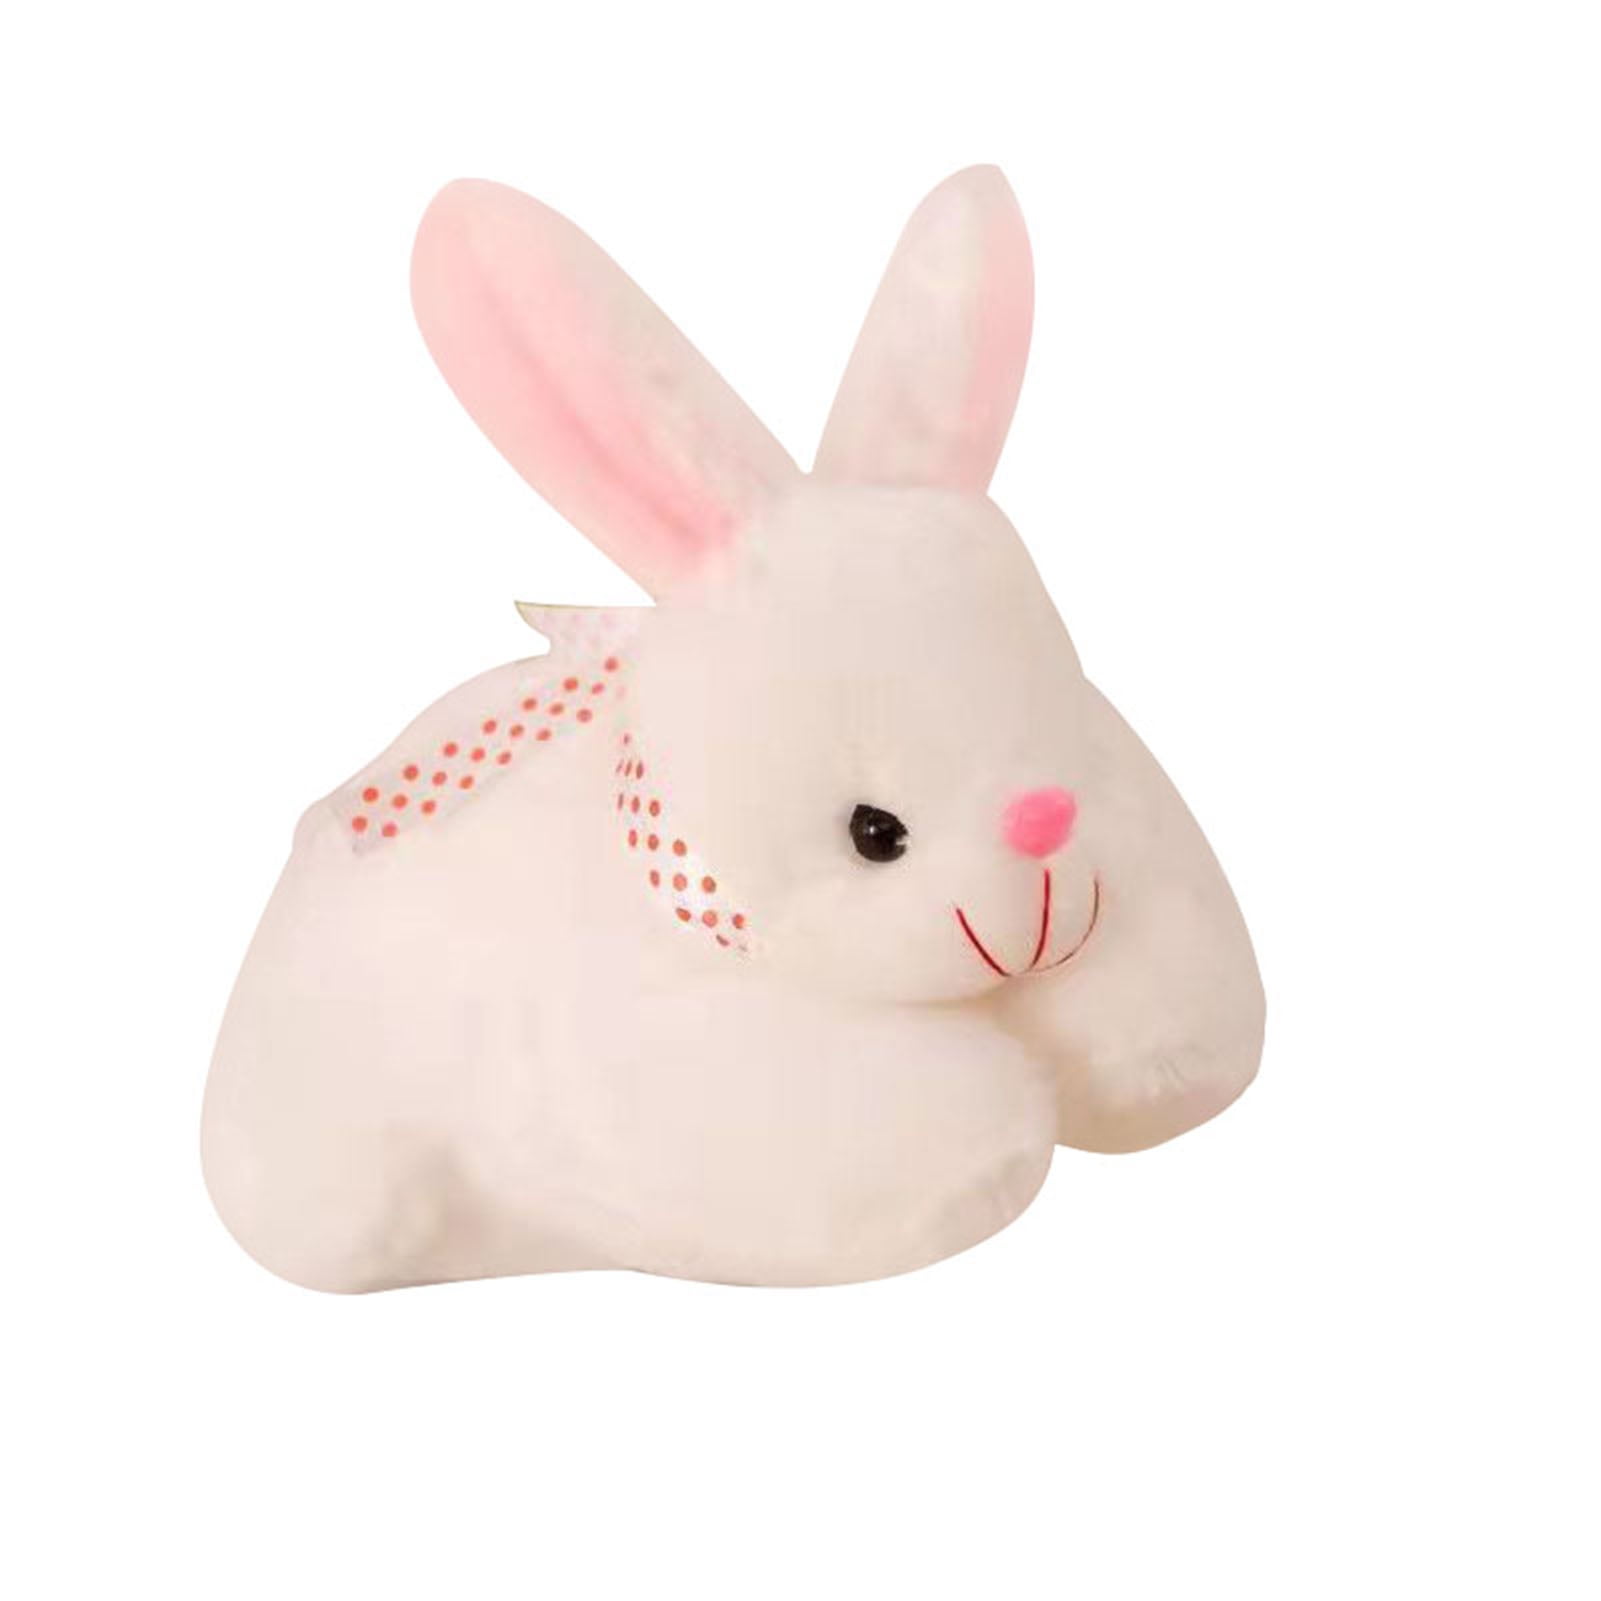 My Benjamins earrings rabbit rabbits bunny bunnies funky cute